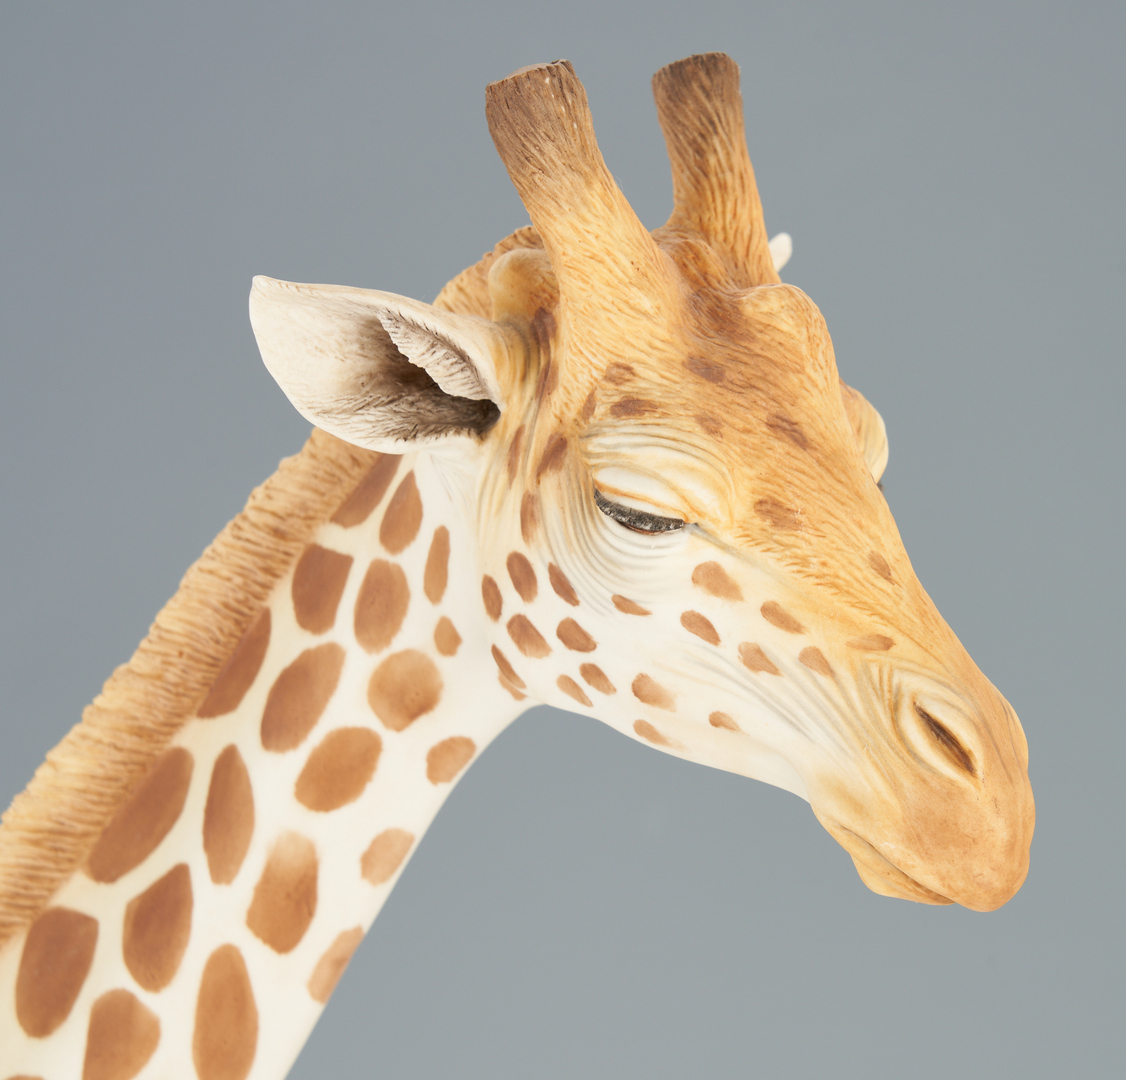 Lot 178: Boehm Mother & Calf Giraffe Porcelain Figure